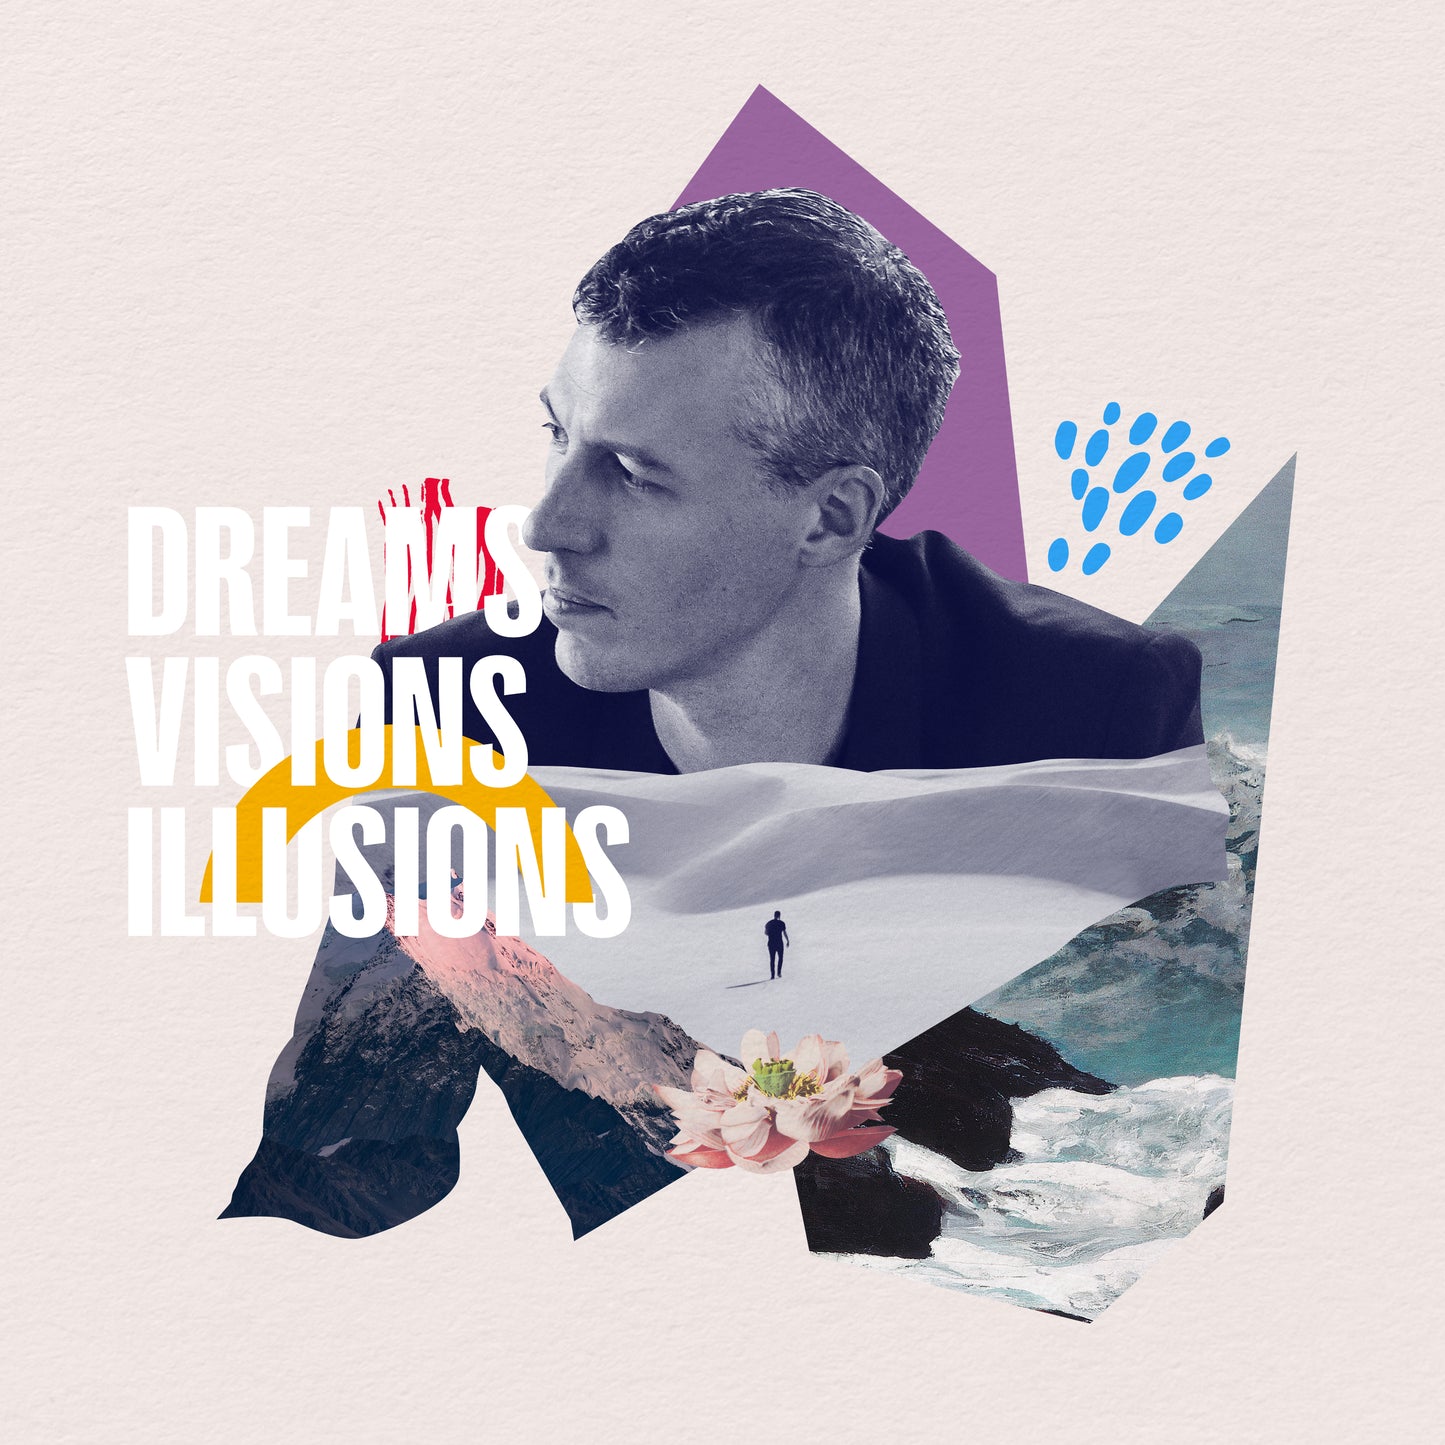 Dreams, Visions, Illusions - CD